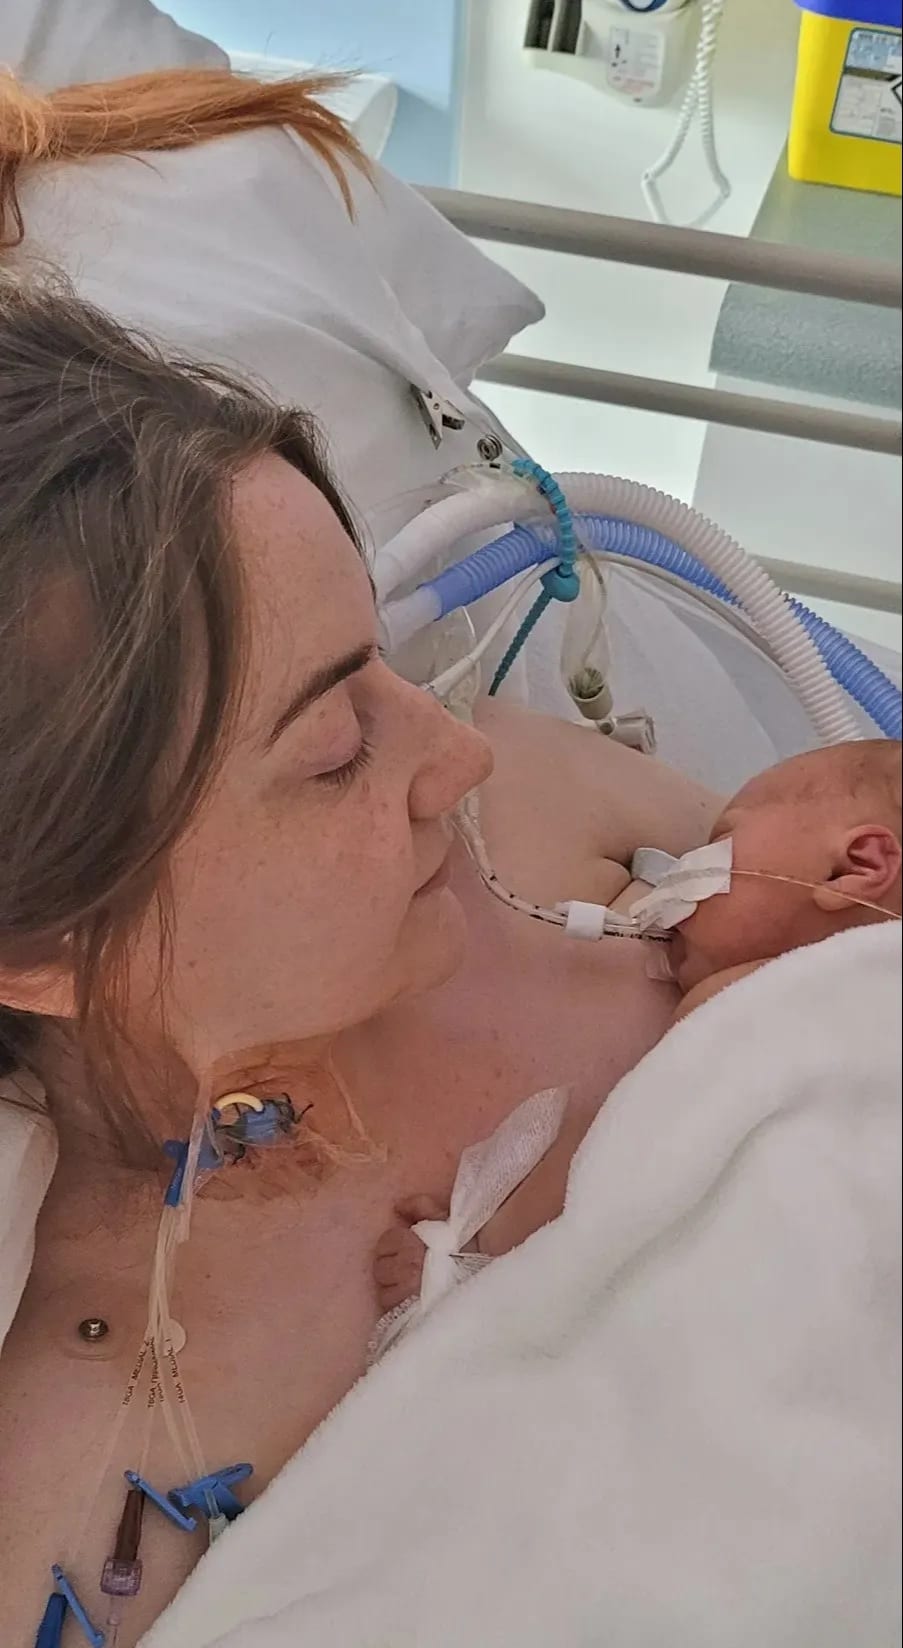 revistapazes.com - Após tragédia, mãe desabafa: “Meu bebê poderia estar vivo, se os médicos tivessem me ouvido”